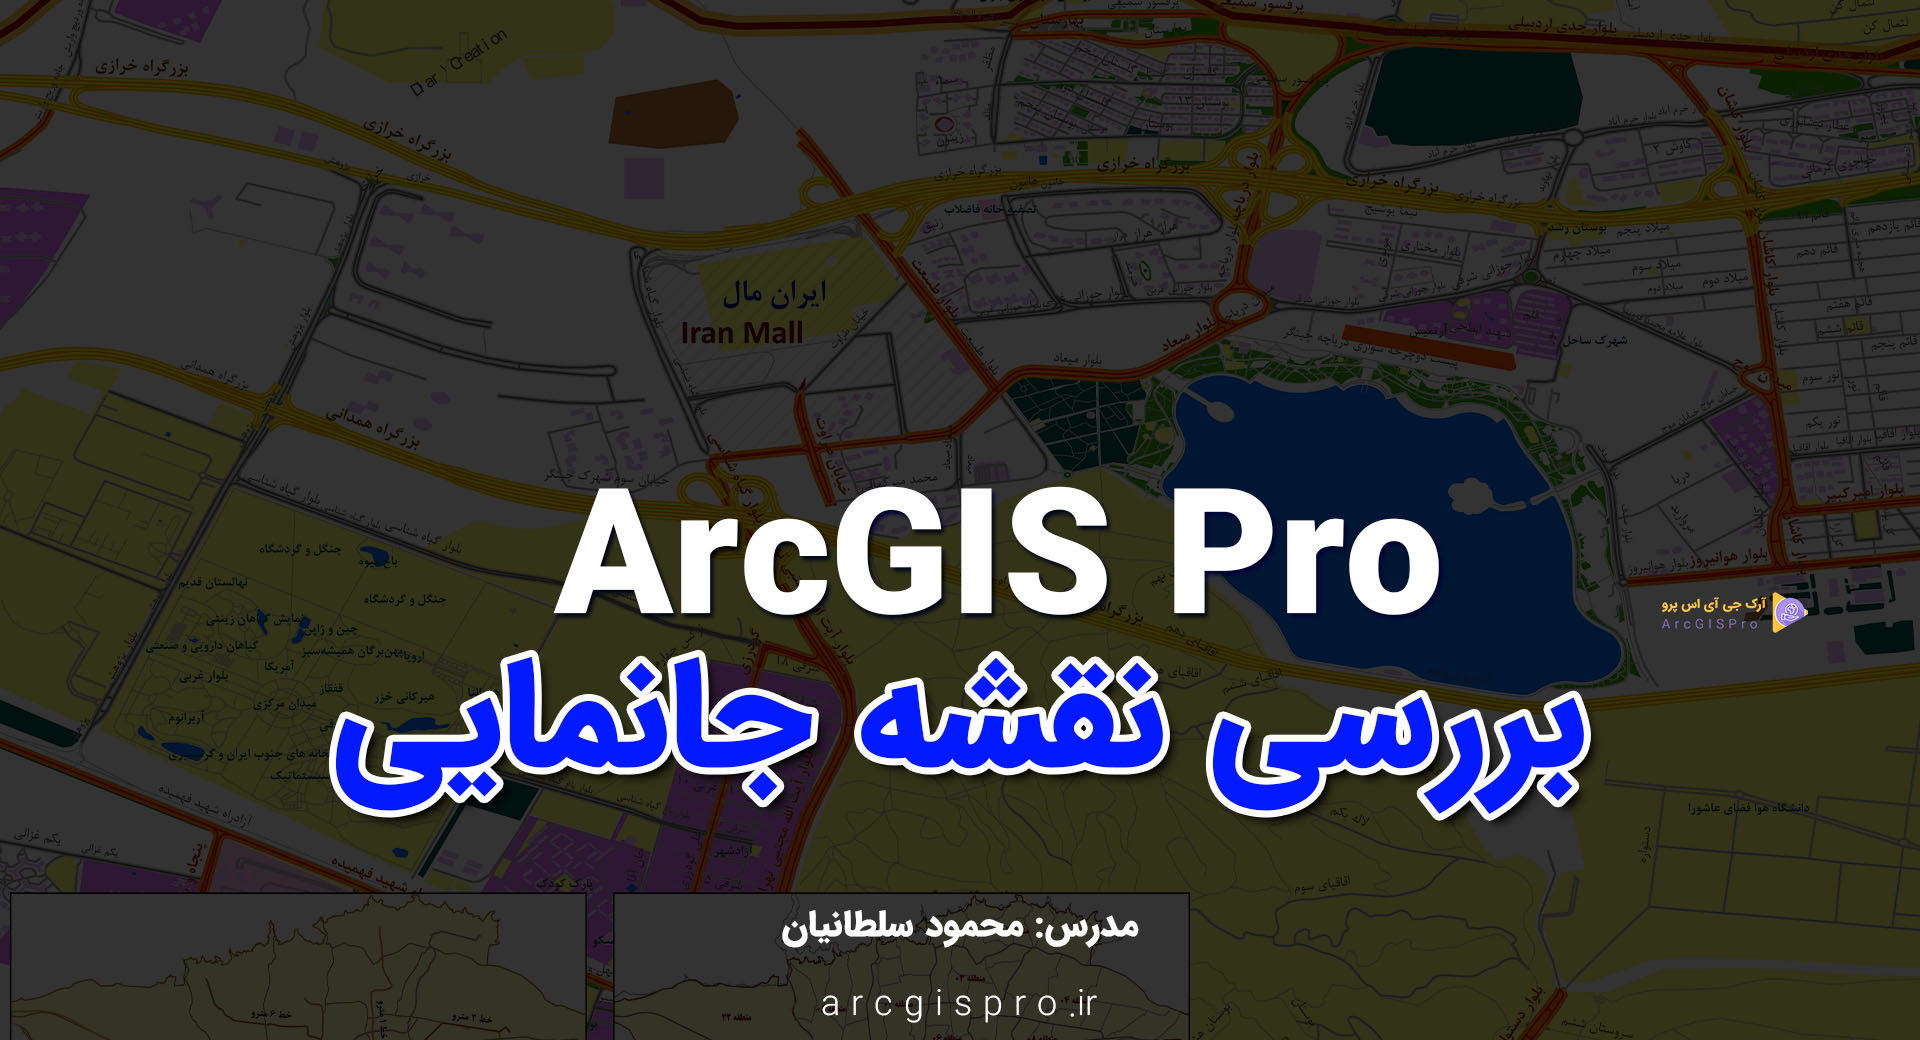 آموزش جانمایی نقشه ایران مال در ArcGISPro